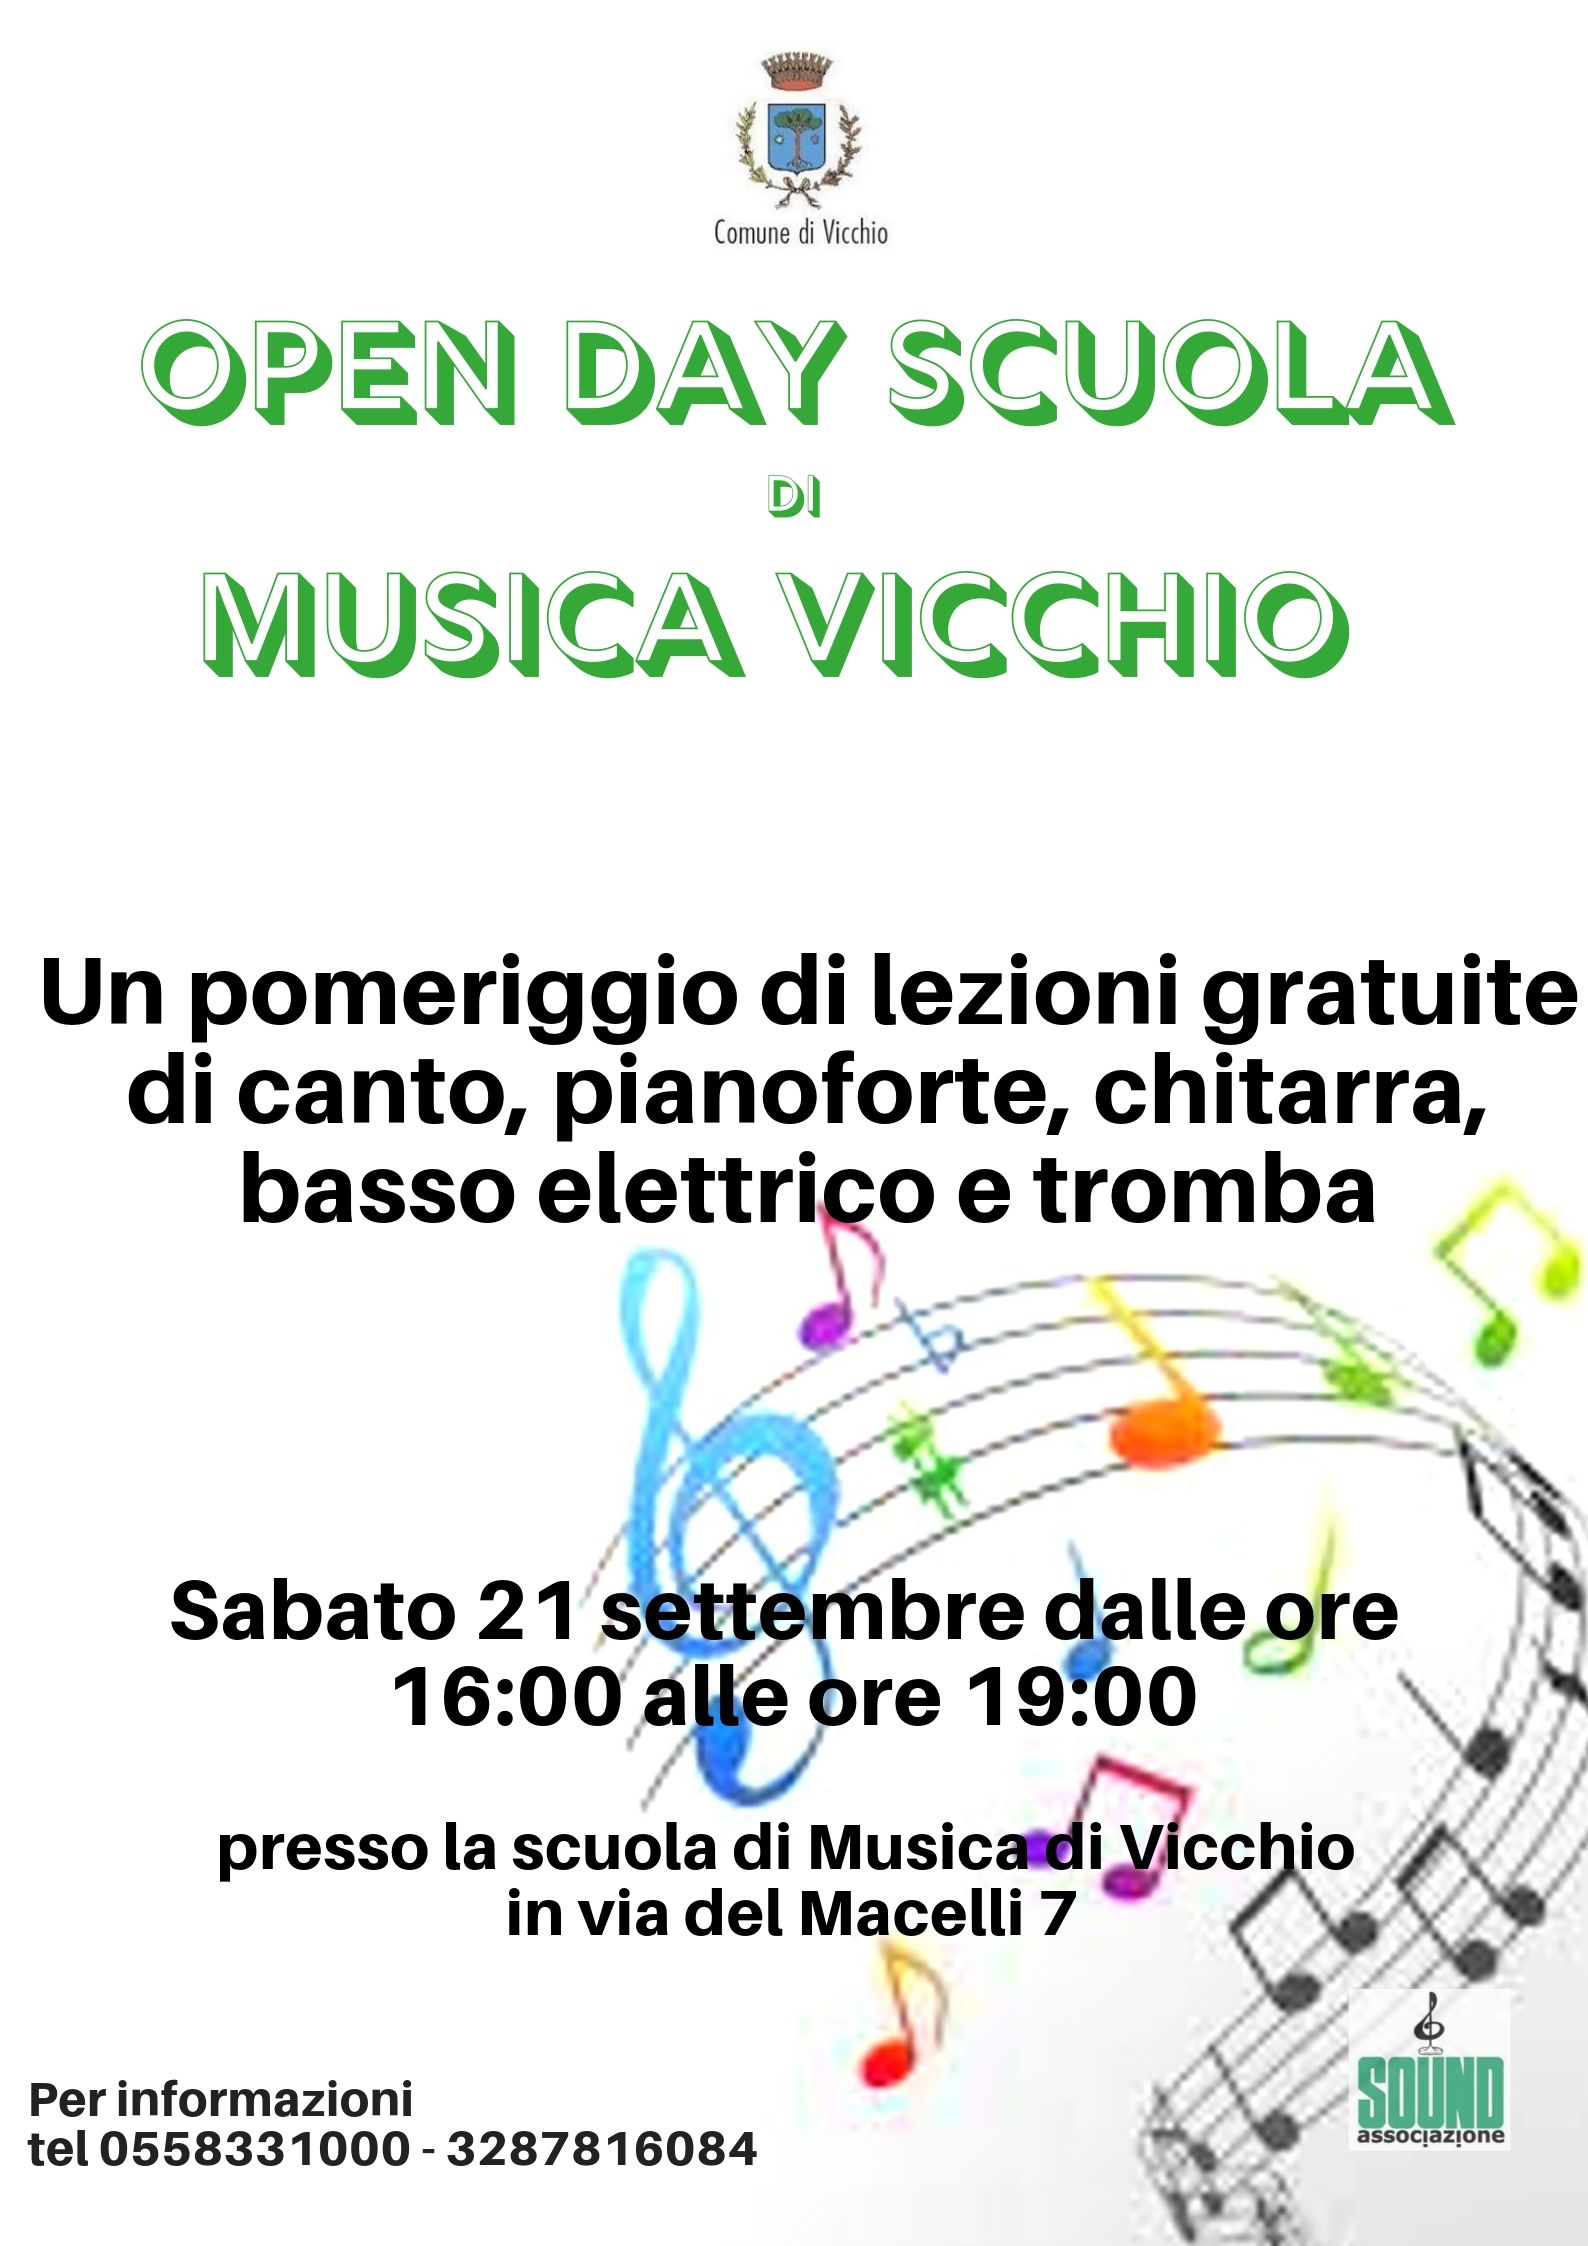 Open Day Scuola di musica Vicchio Sabato 21 Settembre.